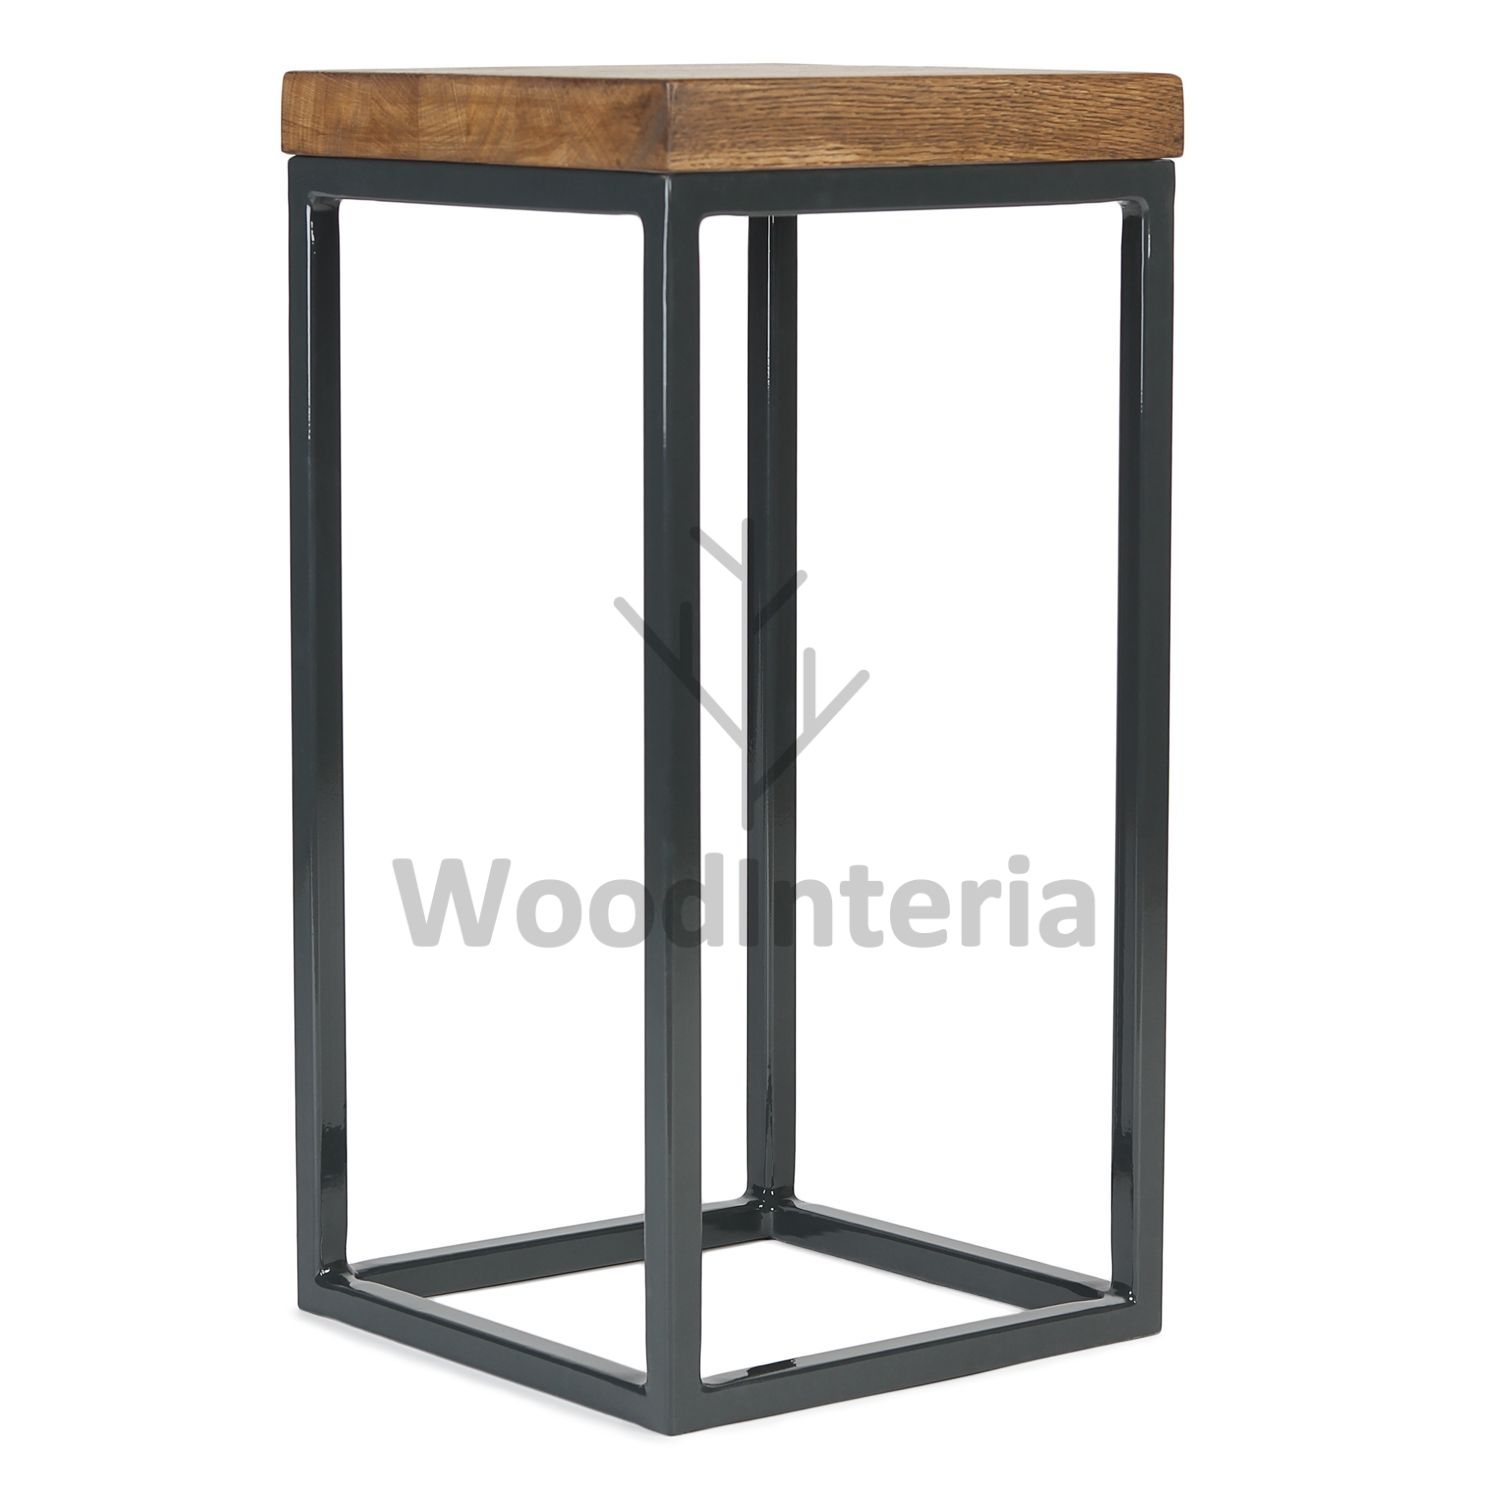 фото кофейный столик loft industrial oak qubris tall в интерьере лофт эко | WoodInteria